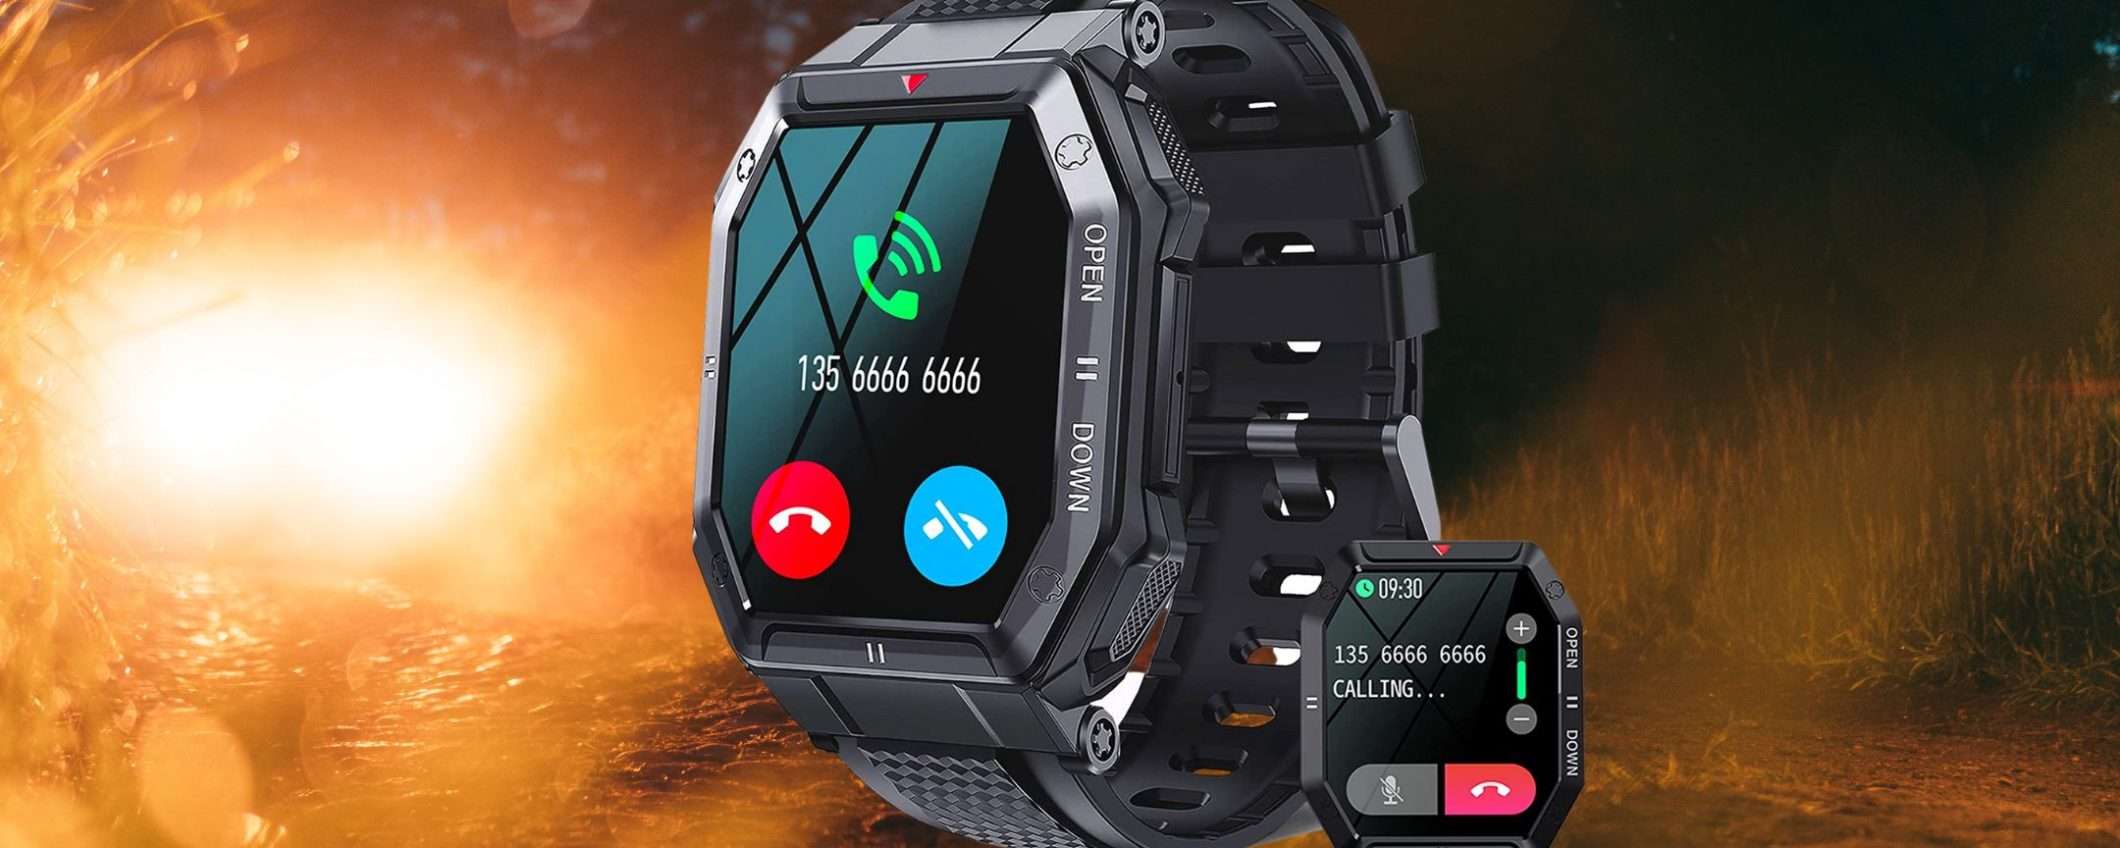 Smartwatch robusto e militare: su Amazon in offerta lampo a meno di 40€